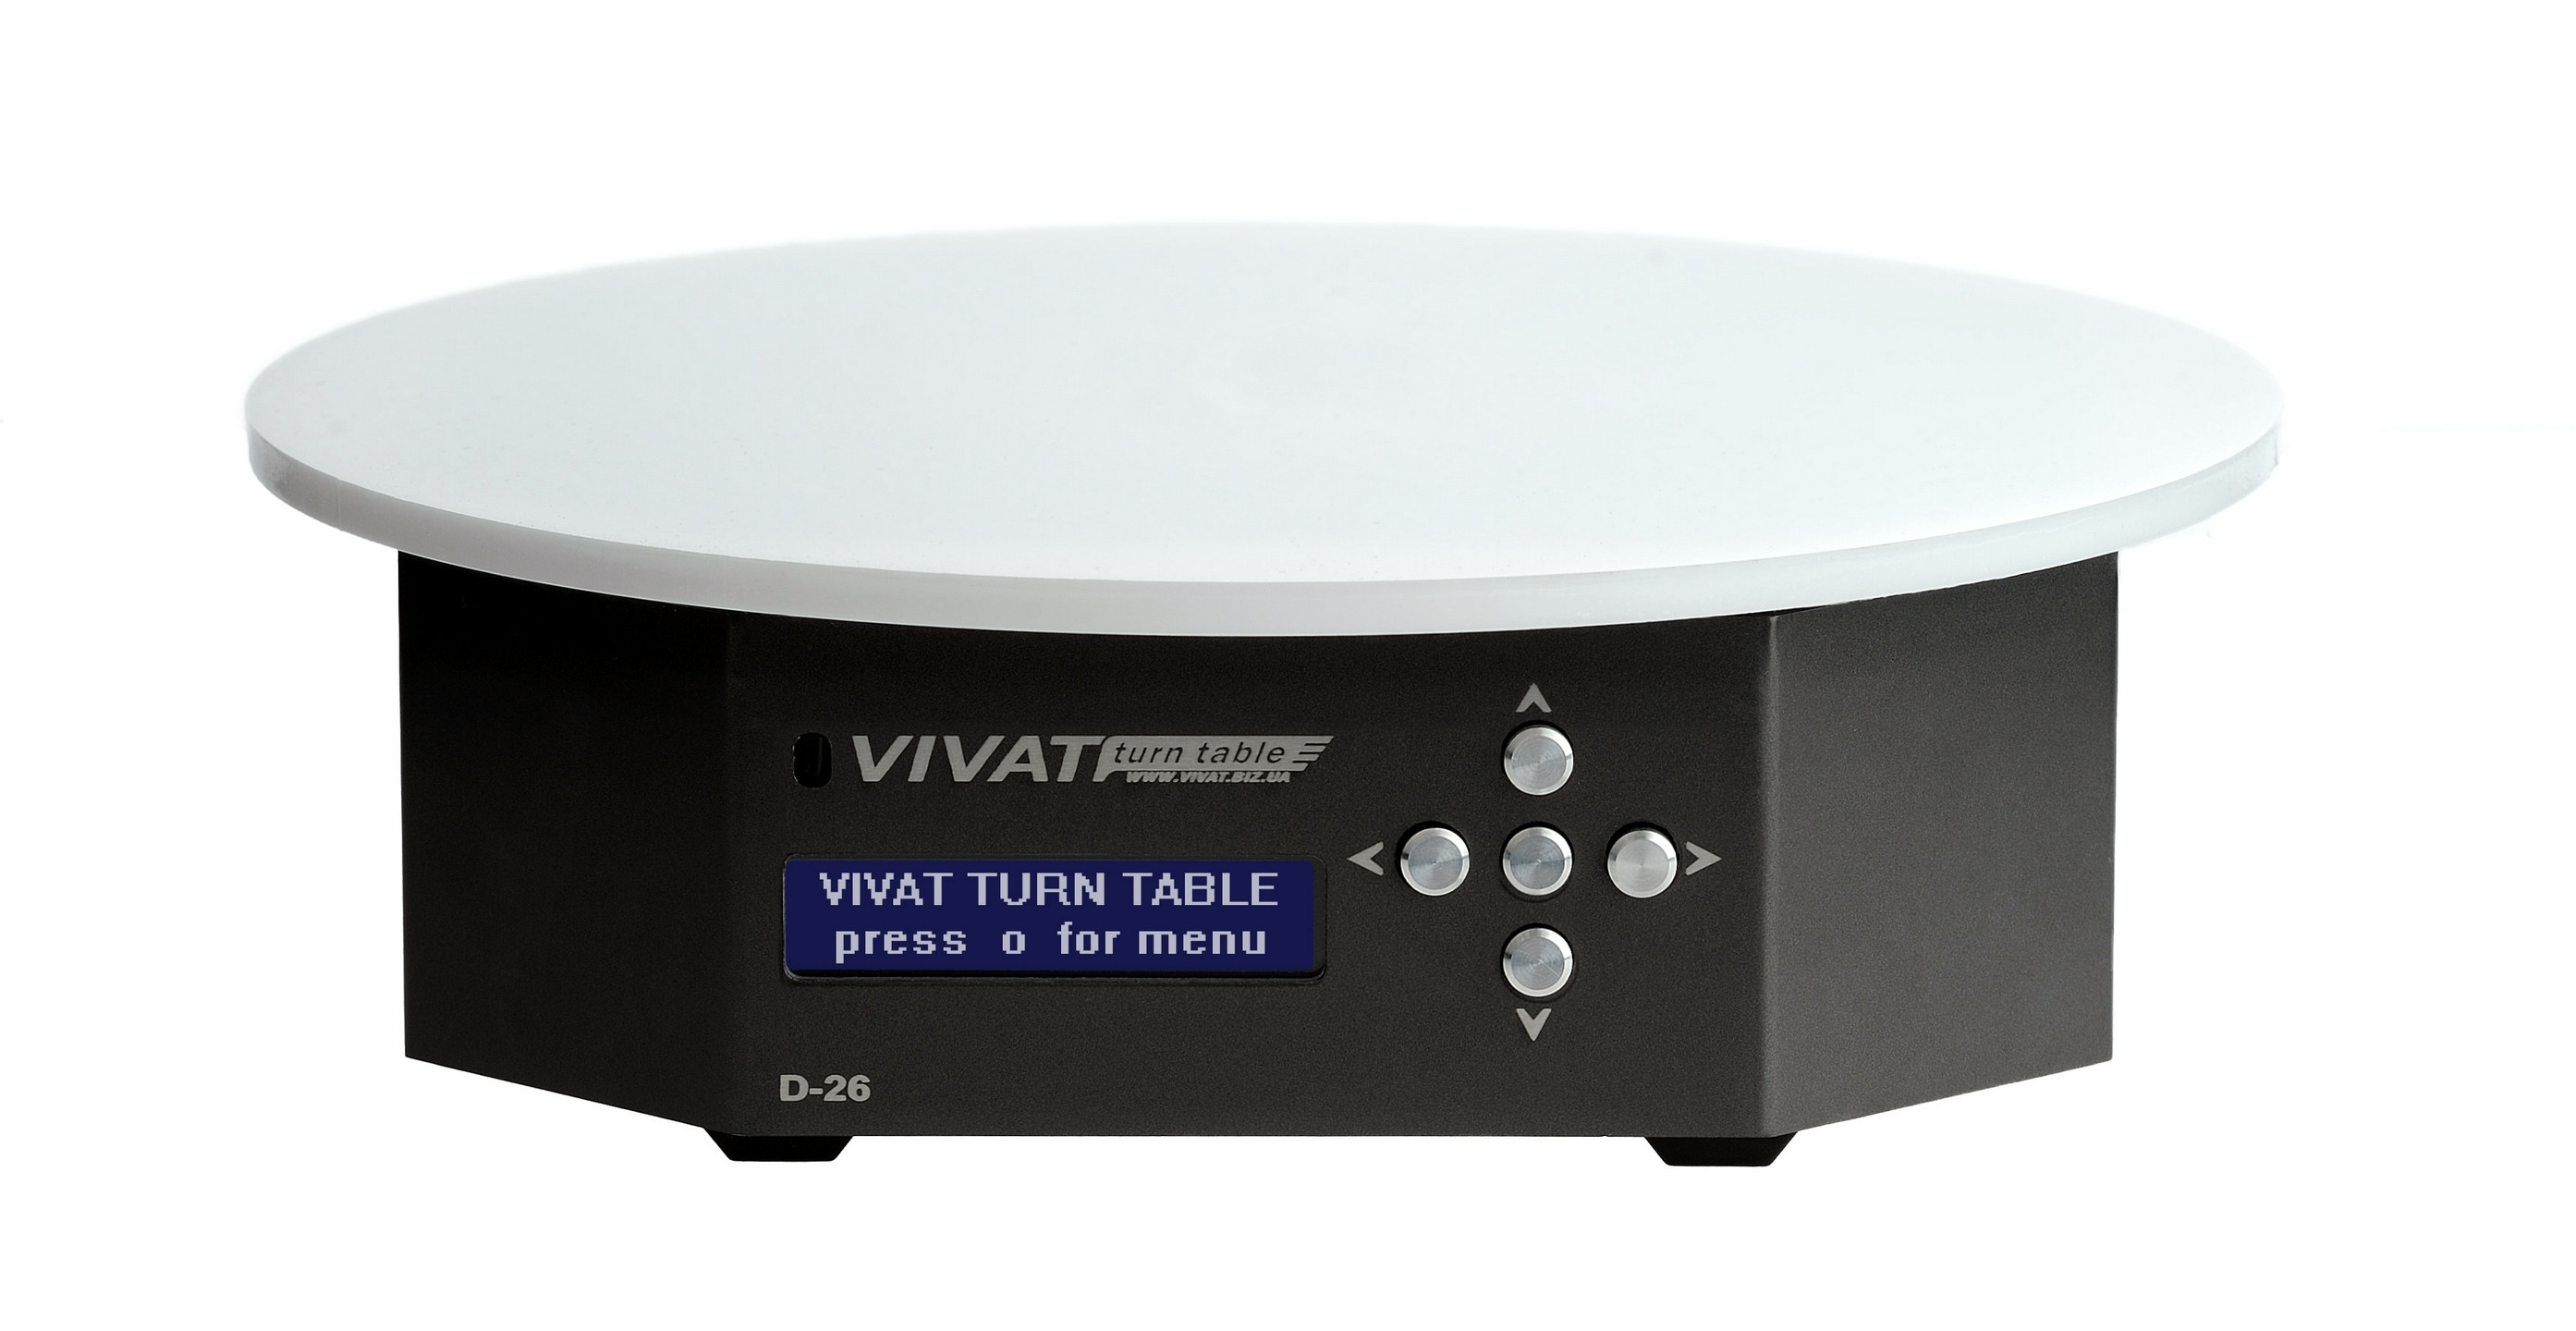 Стол для предметной съемки поворотный Vivat Turn Table D-26 (диаметр платформы 26 см)